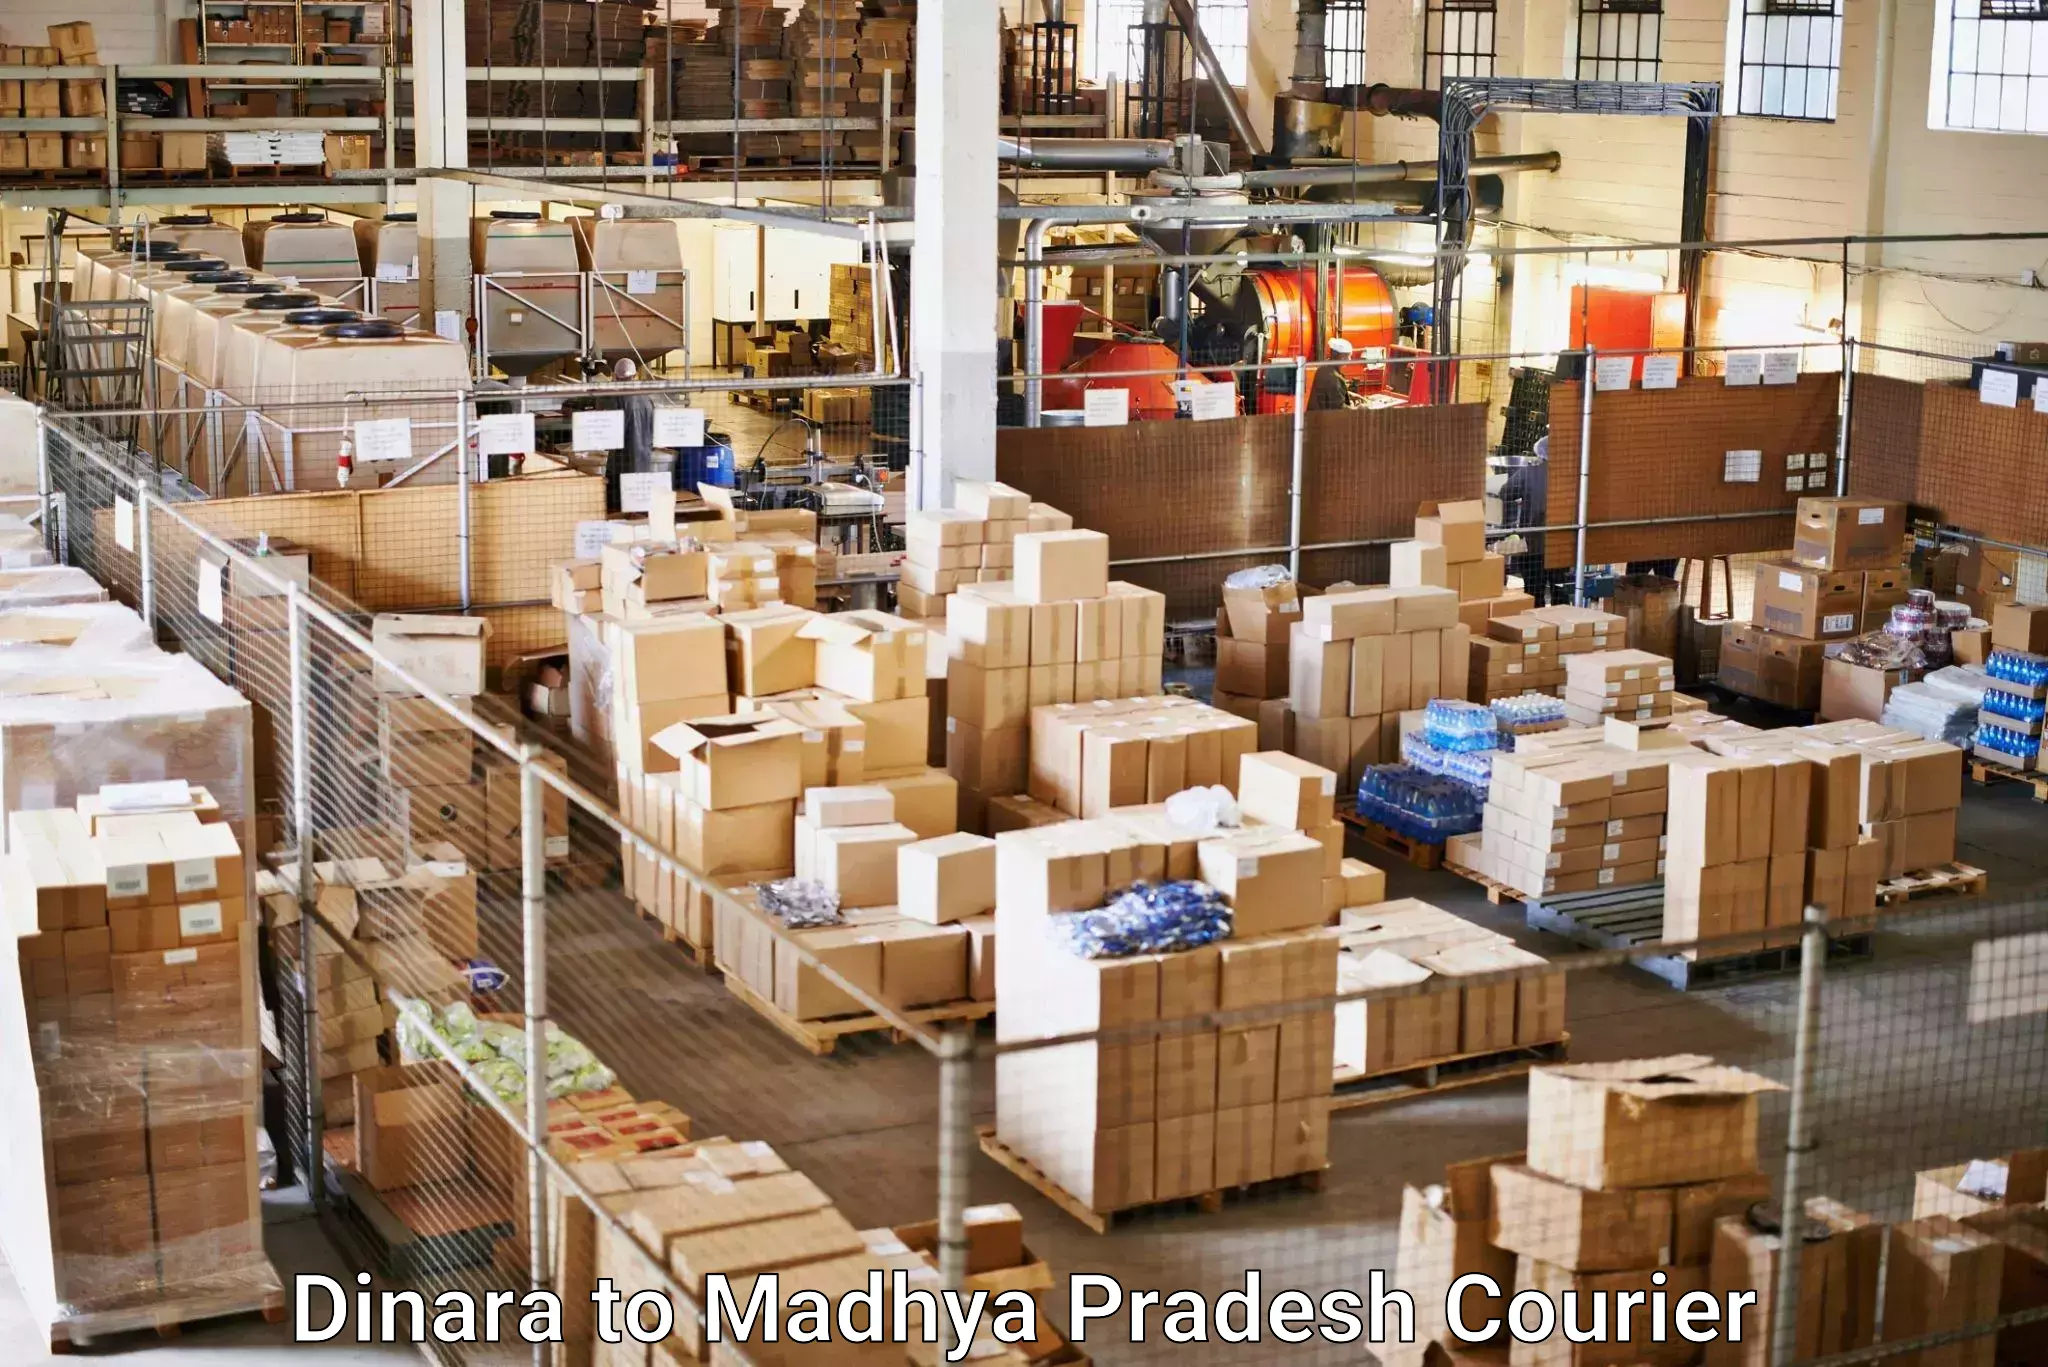 Professional courier handling Dinara to Nainpur